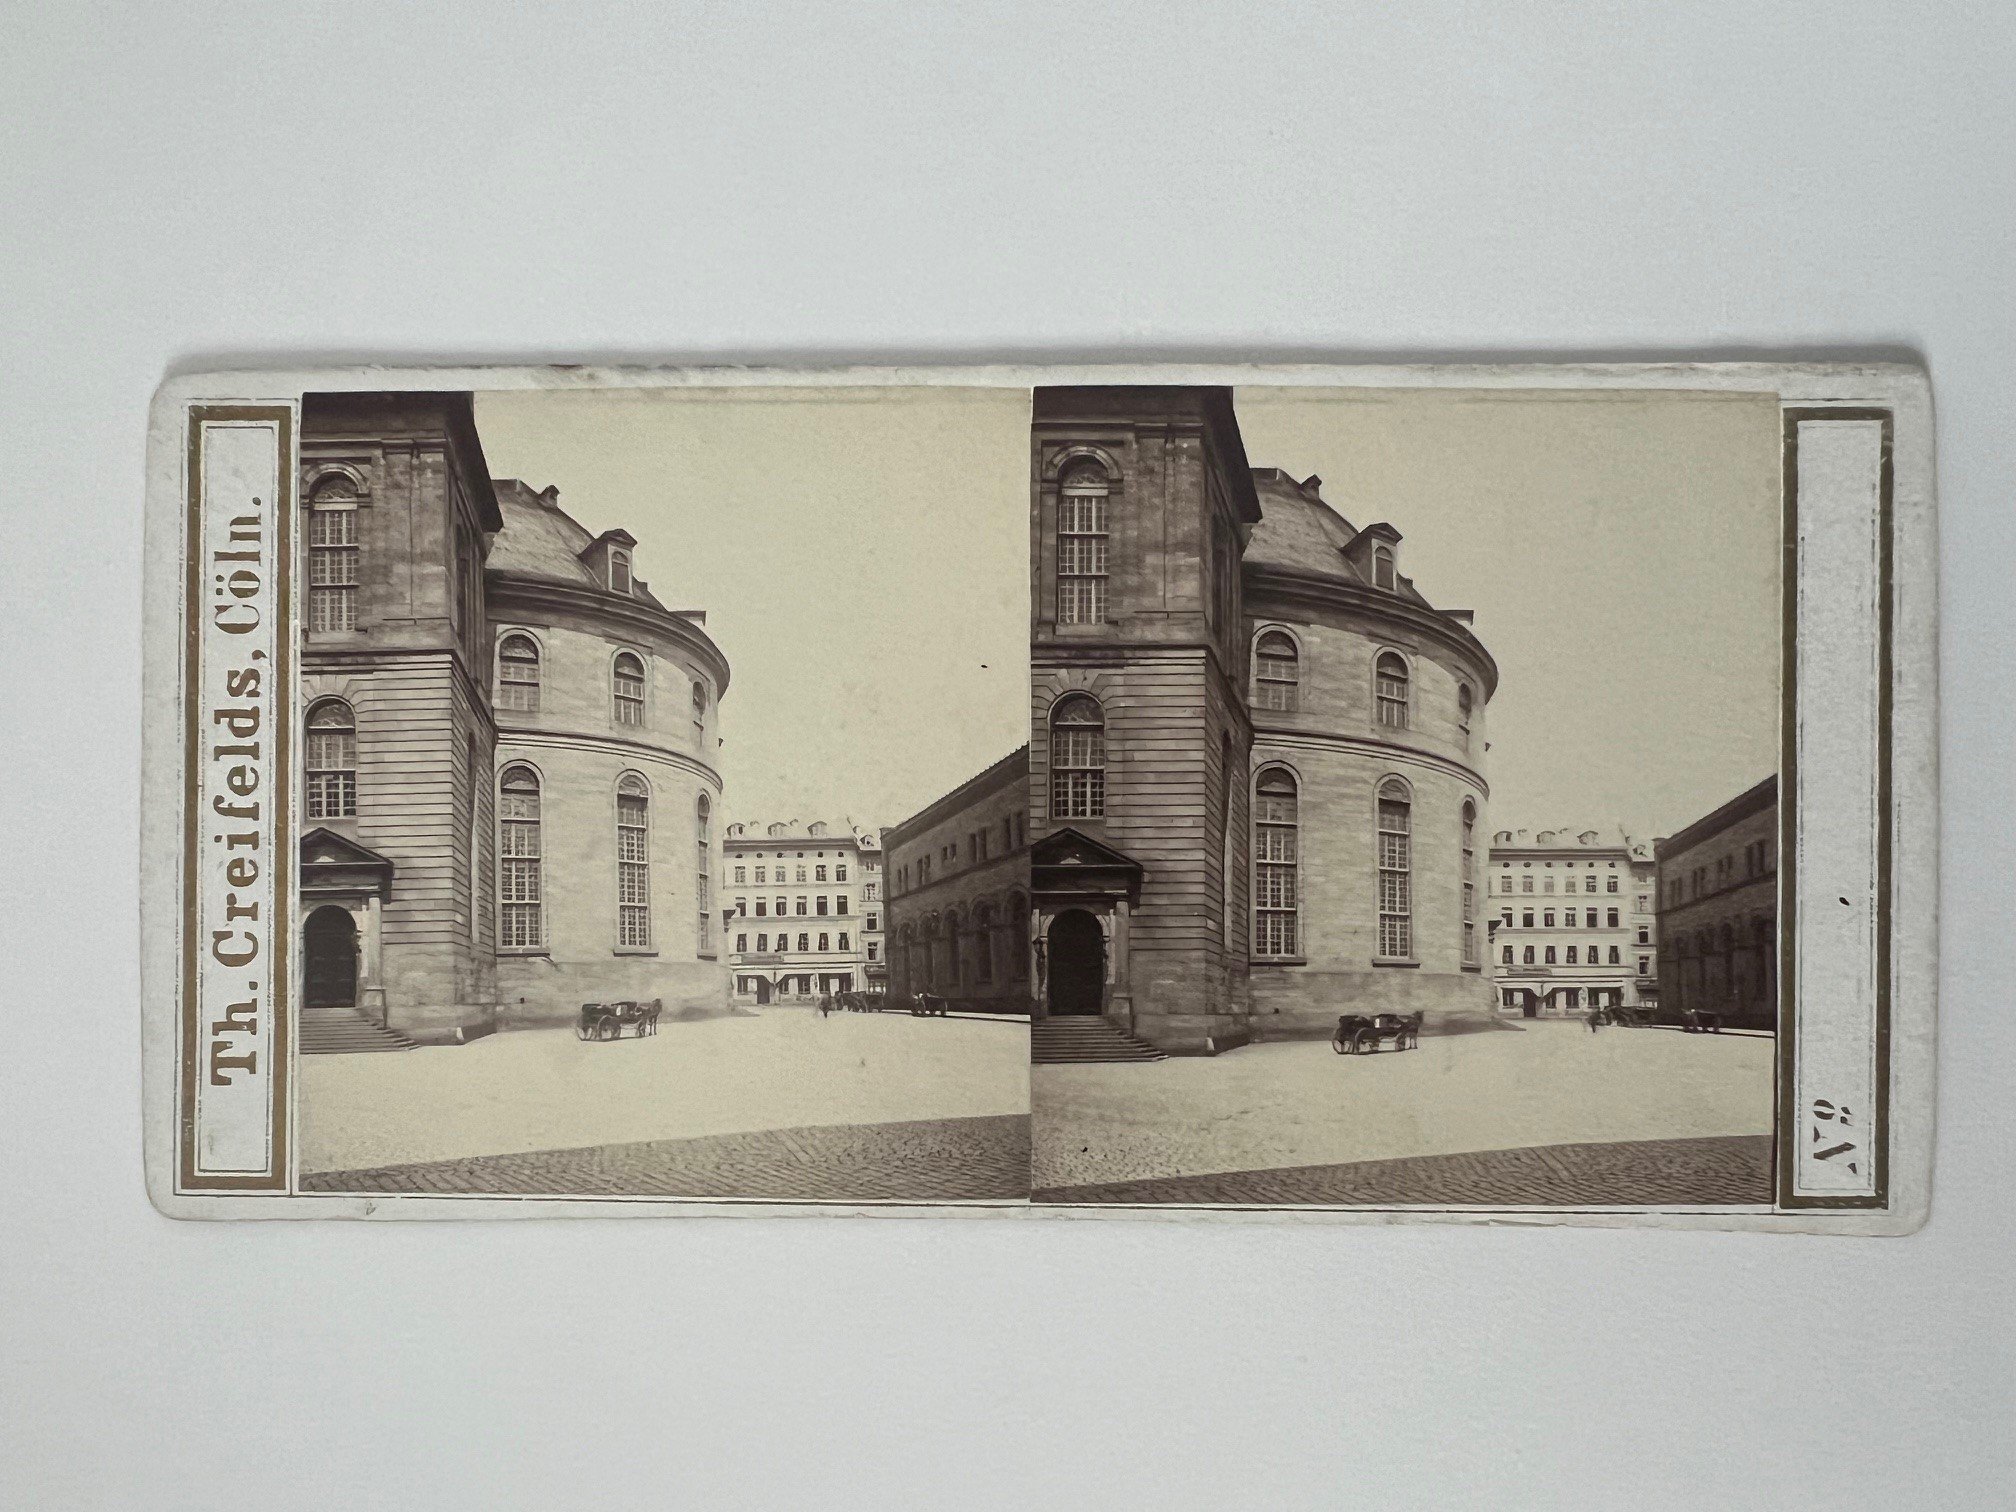 Stereobild, Theodor Creifelds, Frankfurt, Nr. 502, Die Paulskirche und Börse, ca. 1870. (Taunus-Rhein-Main - Regionalgeschichtliche Sammlung Dr. Stefan Naas CC BY-NC-SA)